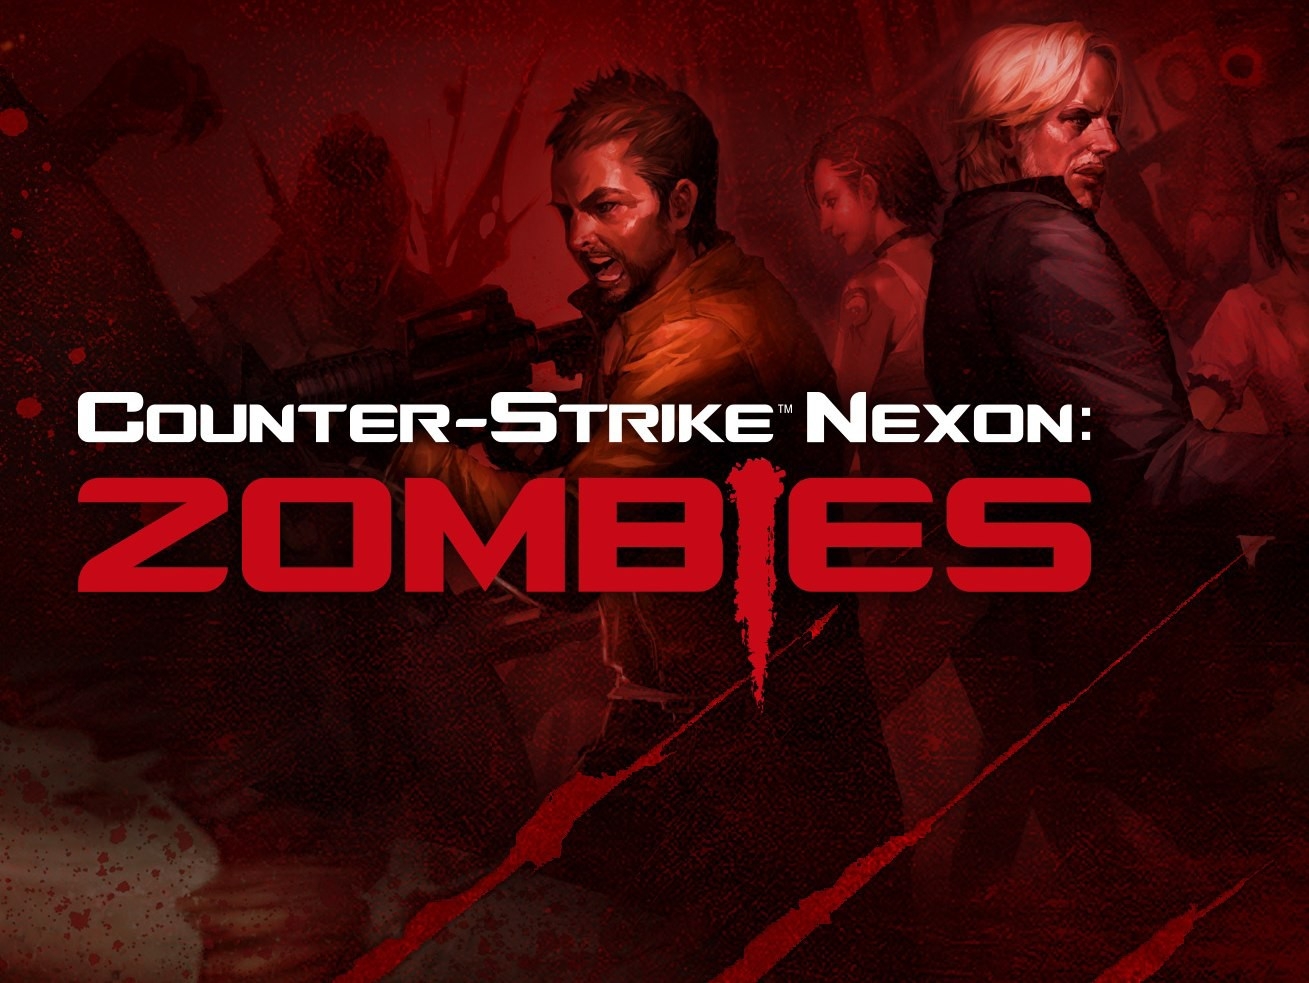 Трейлер Сounter-Strike Nexon: Zombies